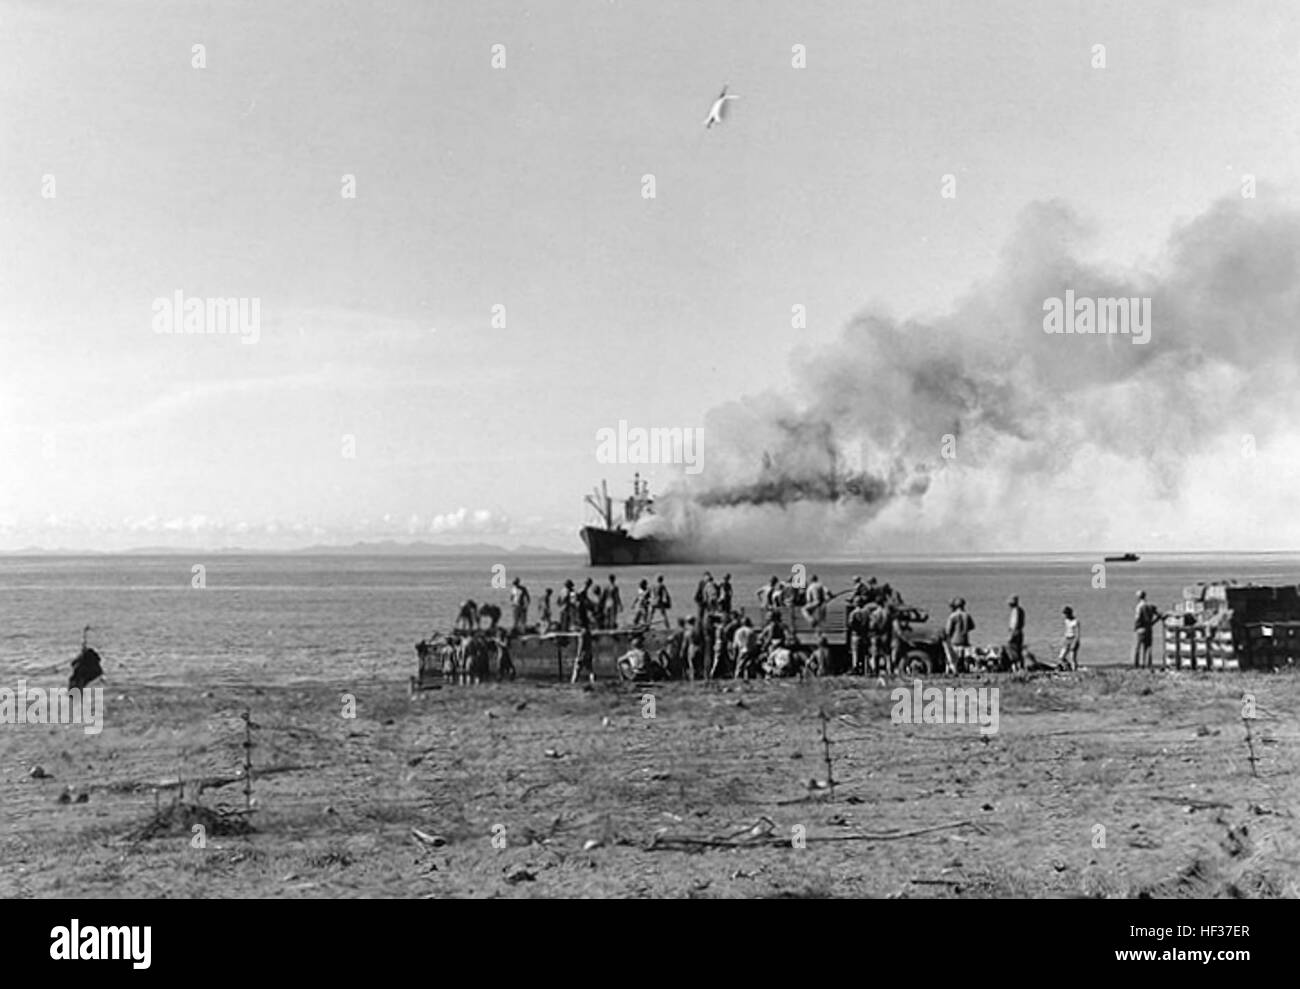 USS Alchiba (AK-23) est échoué et le feu éteint Lunga Point, Guadalcanal, vers la fin de novembre 1942. Elle avait été torpillé par le sous-marin japonais I-16 le 28 novembre. Les hommes sont la manutention de la cargaison sur la plage, peut-être aider à décharger Alchiba alors qu'elle combattait ses feux. Remarque Les barbelés l'escrime à l'avant-plan. Photographie du Corps des Marines des États-Unis. USS Alchiba (AK-23) est échoué et le feu éteint Lunga Point en novembre 1942 Banque D'Images